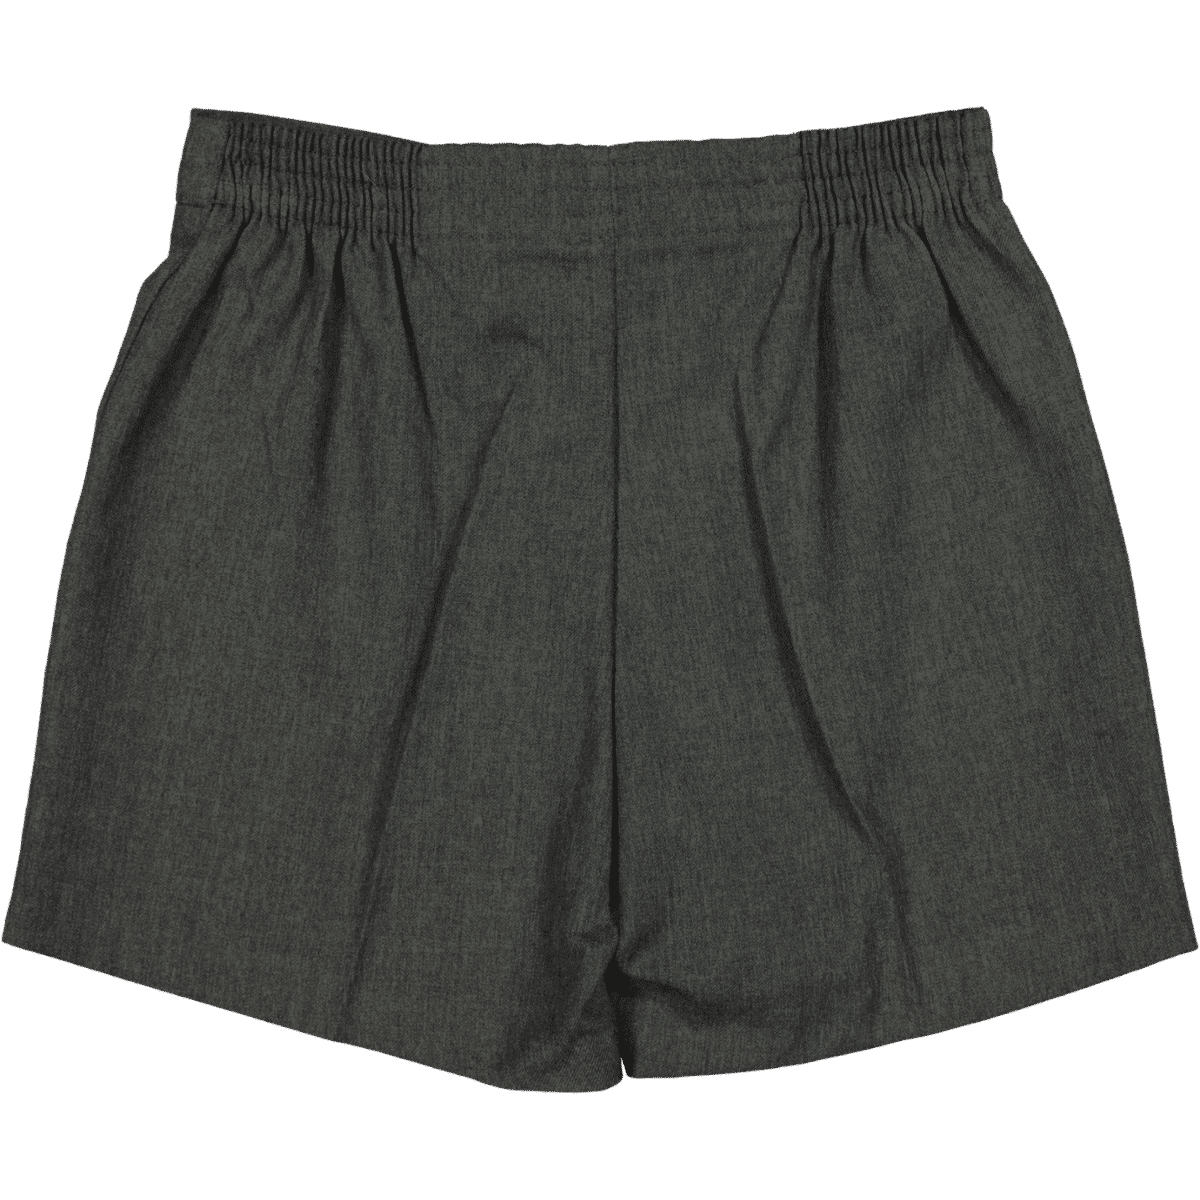 Wholesale Boy School Uniform Pants Suppliers, Distributors & Manufacturers  in Sydney, Australia - School Uniforms Australia